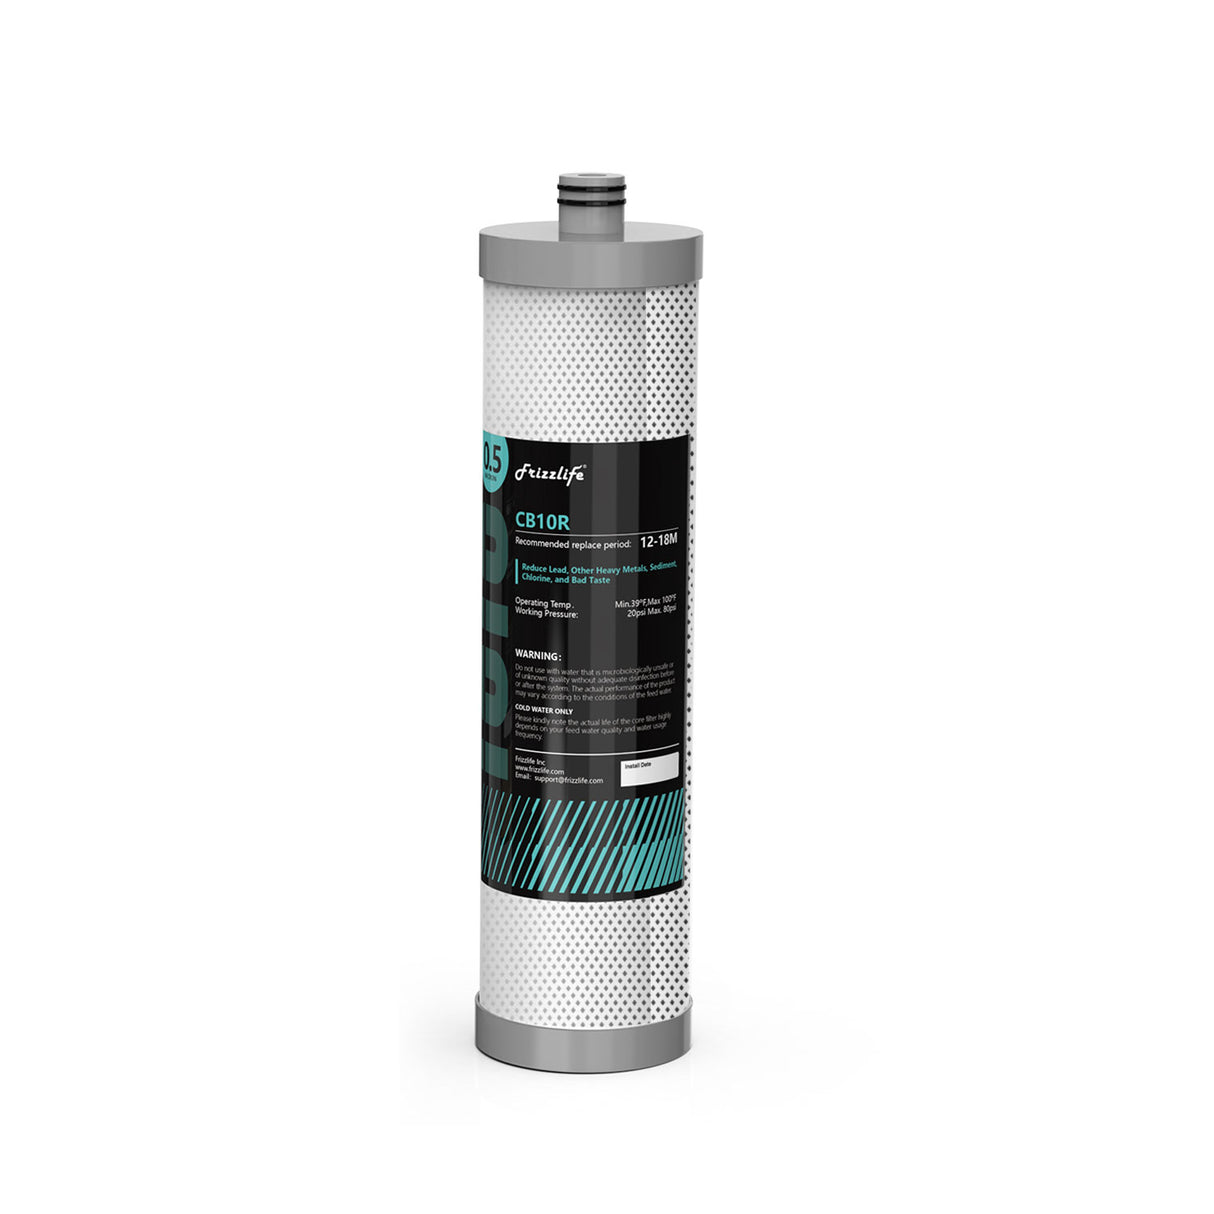 Cartucho de filtro de repuesto Frizzlife CB10R para filtros de agua debajo del fregadero DW10, DW10F, TW10, TW10F